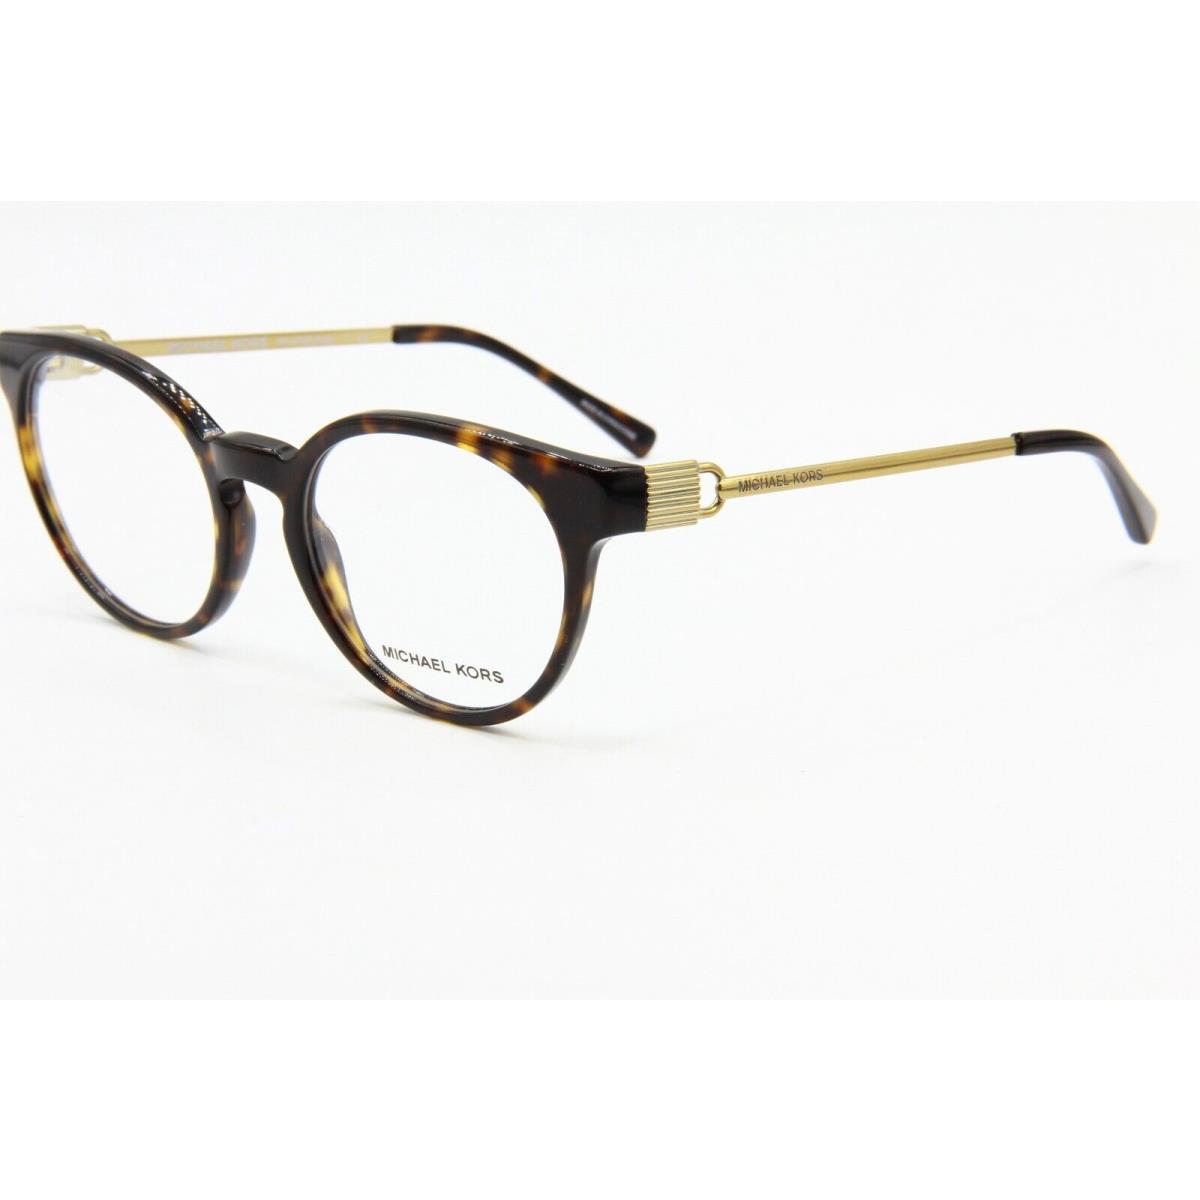 Michael Kors MK 4048 3293 Havana Eyeglasses Frame MK4048 51-19